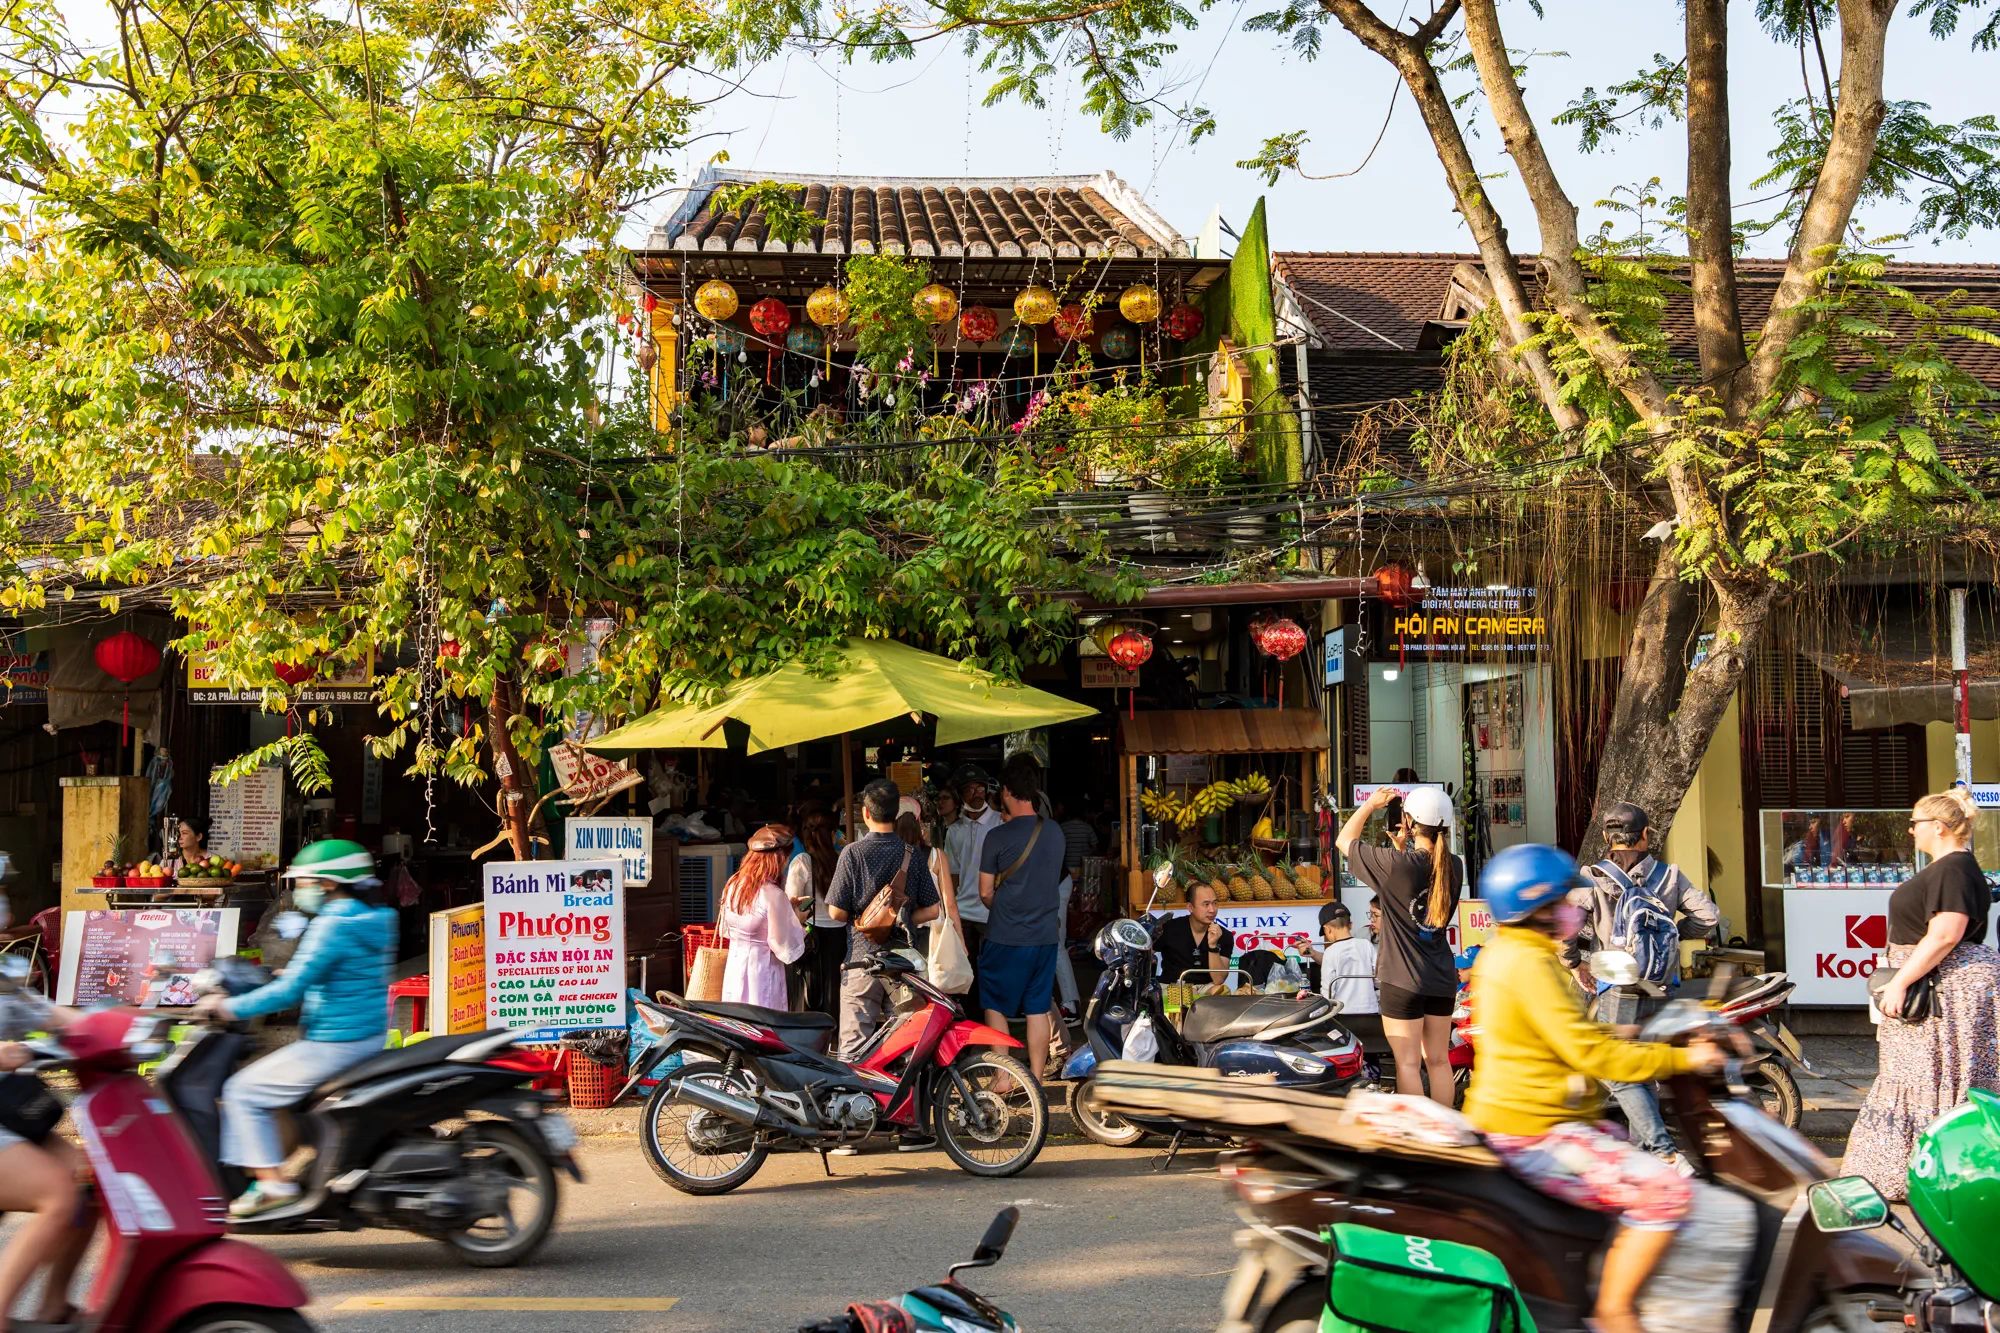 Bánh mì Phượng（ばいんみーふーん）の外観。店が木に覆われており、前の道を忙しくバイクが行き交っている。